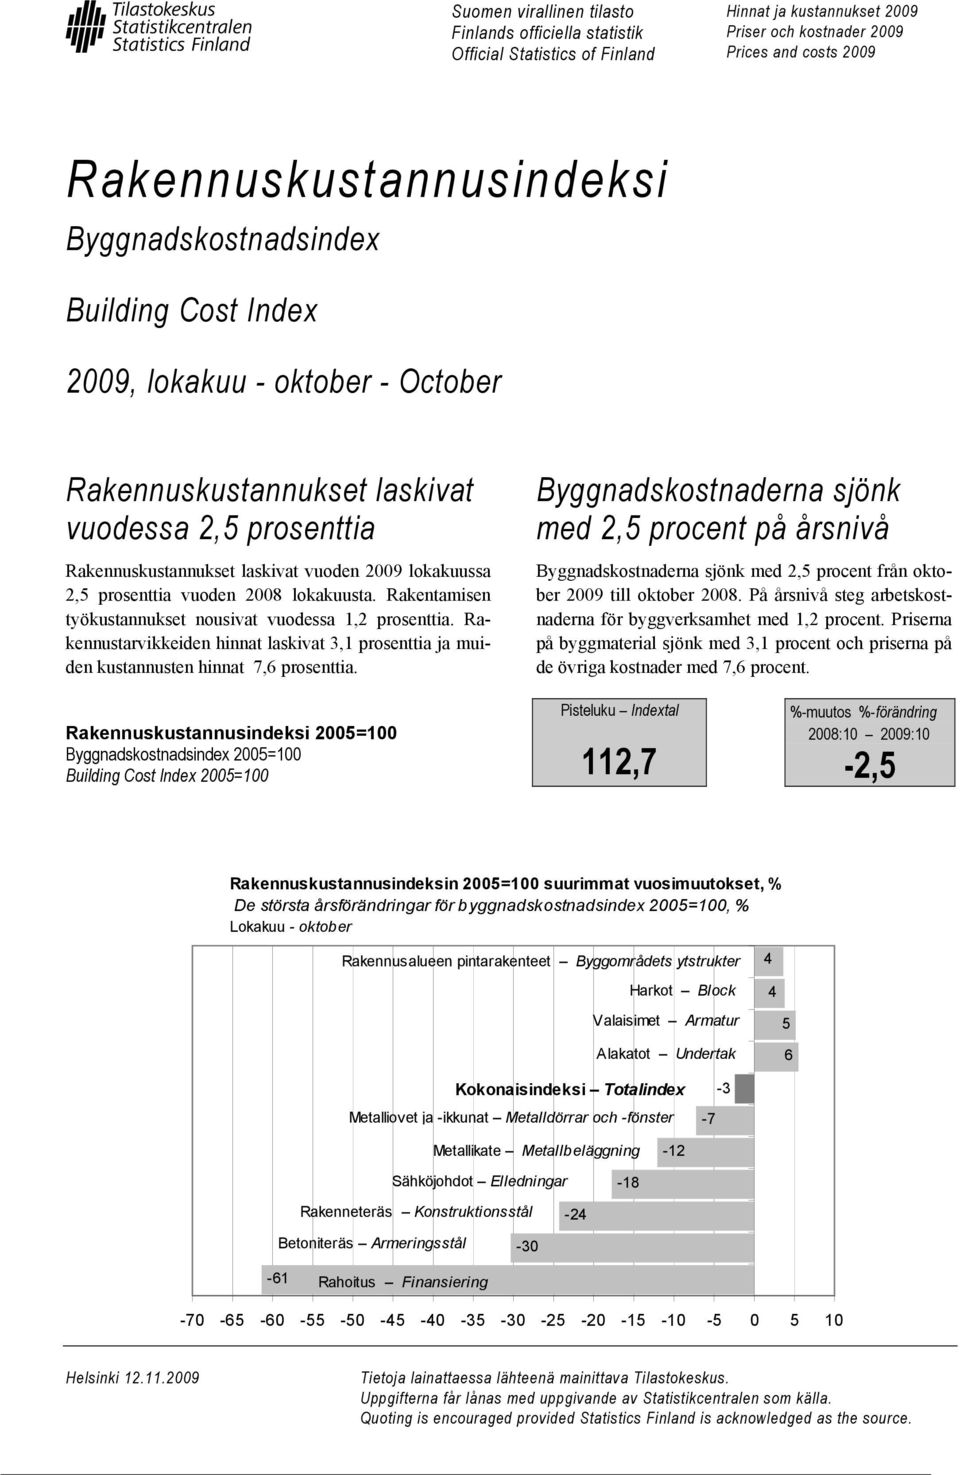 vuoden 2008 lokakuusta. Rakentamisen työkustannukset nousivat vuodessa 1,2 prosenttia. Rakennustarvikkeiden hinnat laskivat 3,1 prosenttia ja muiden kustannusten hinnat 7,6 prosenttia.